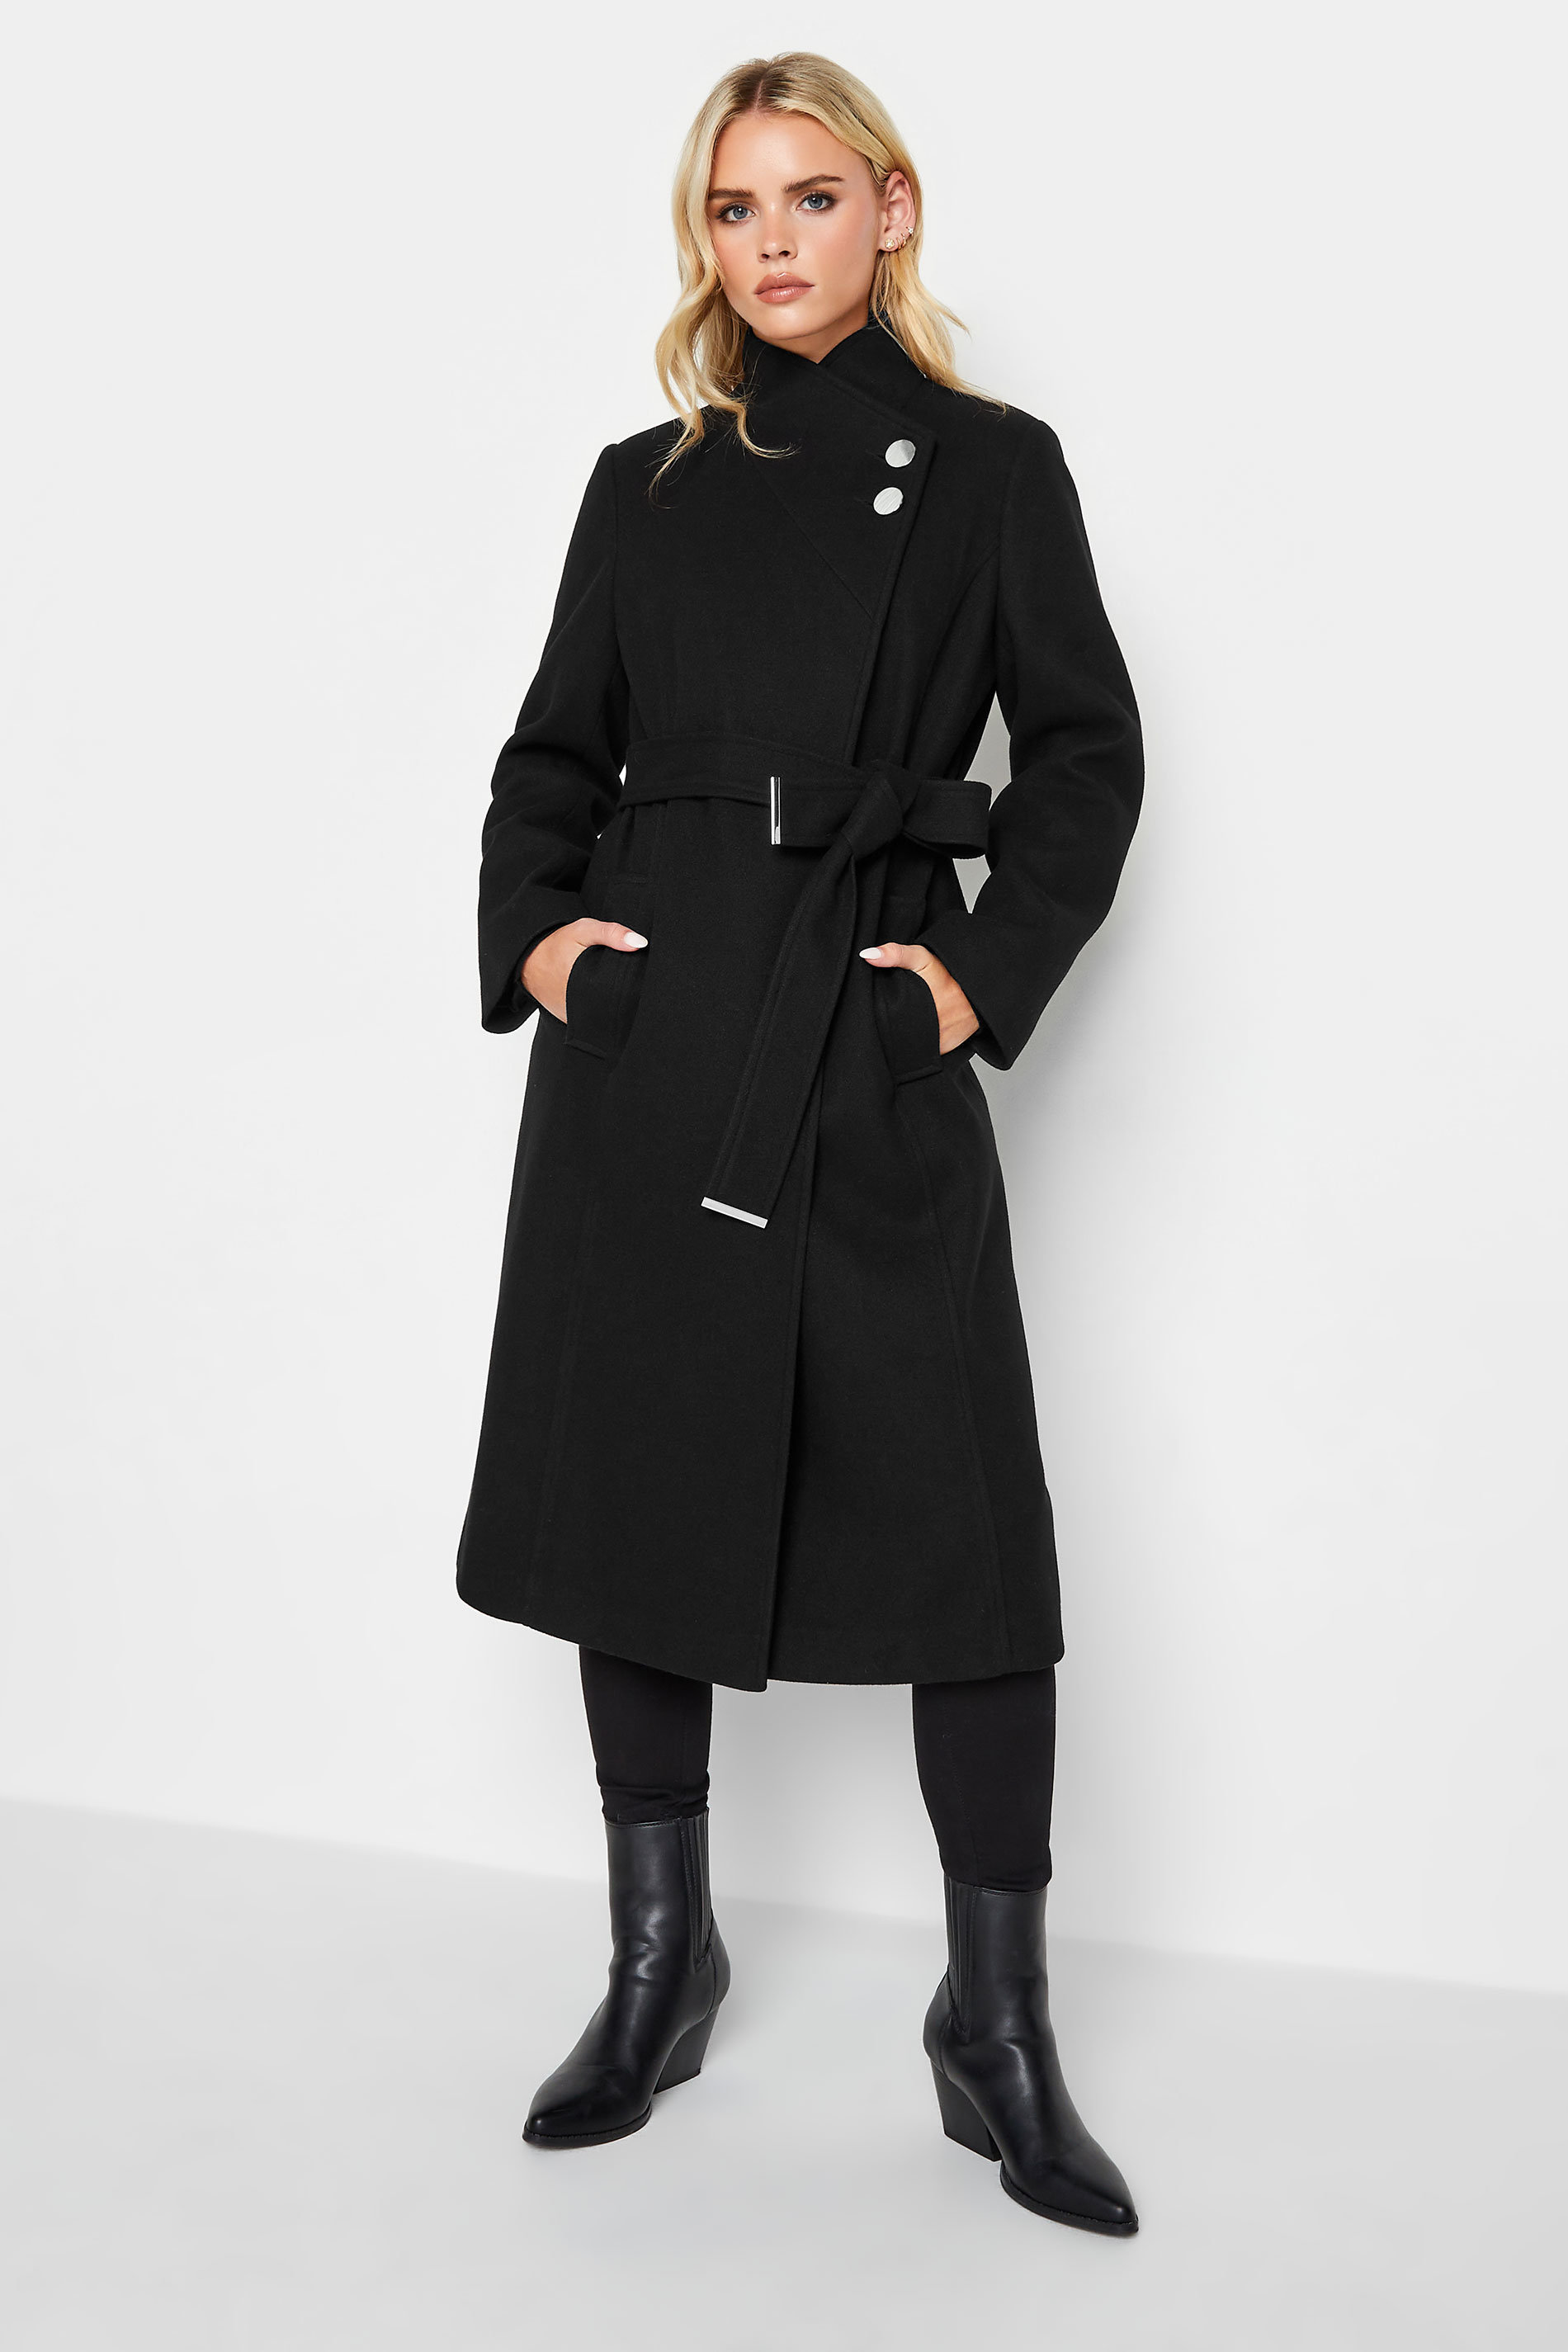 Pixiegirl Black Wrap Belted Coat 18 Pixiegirl | Petite Women's Petite Coats